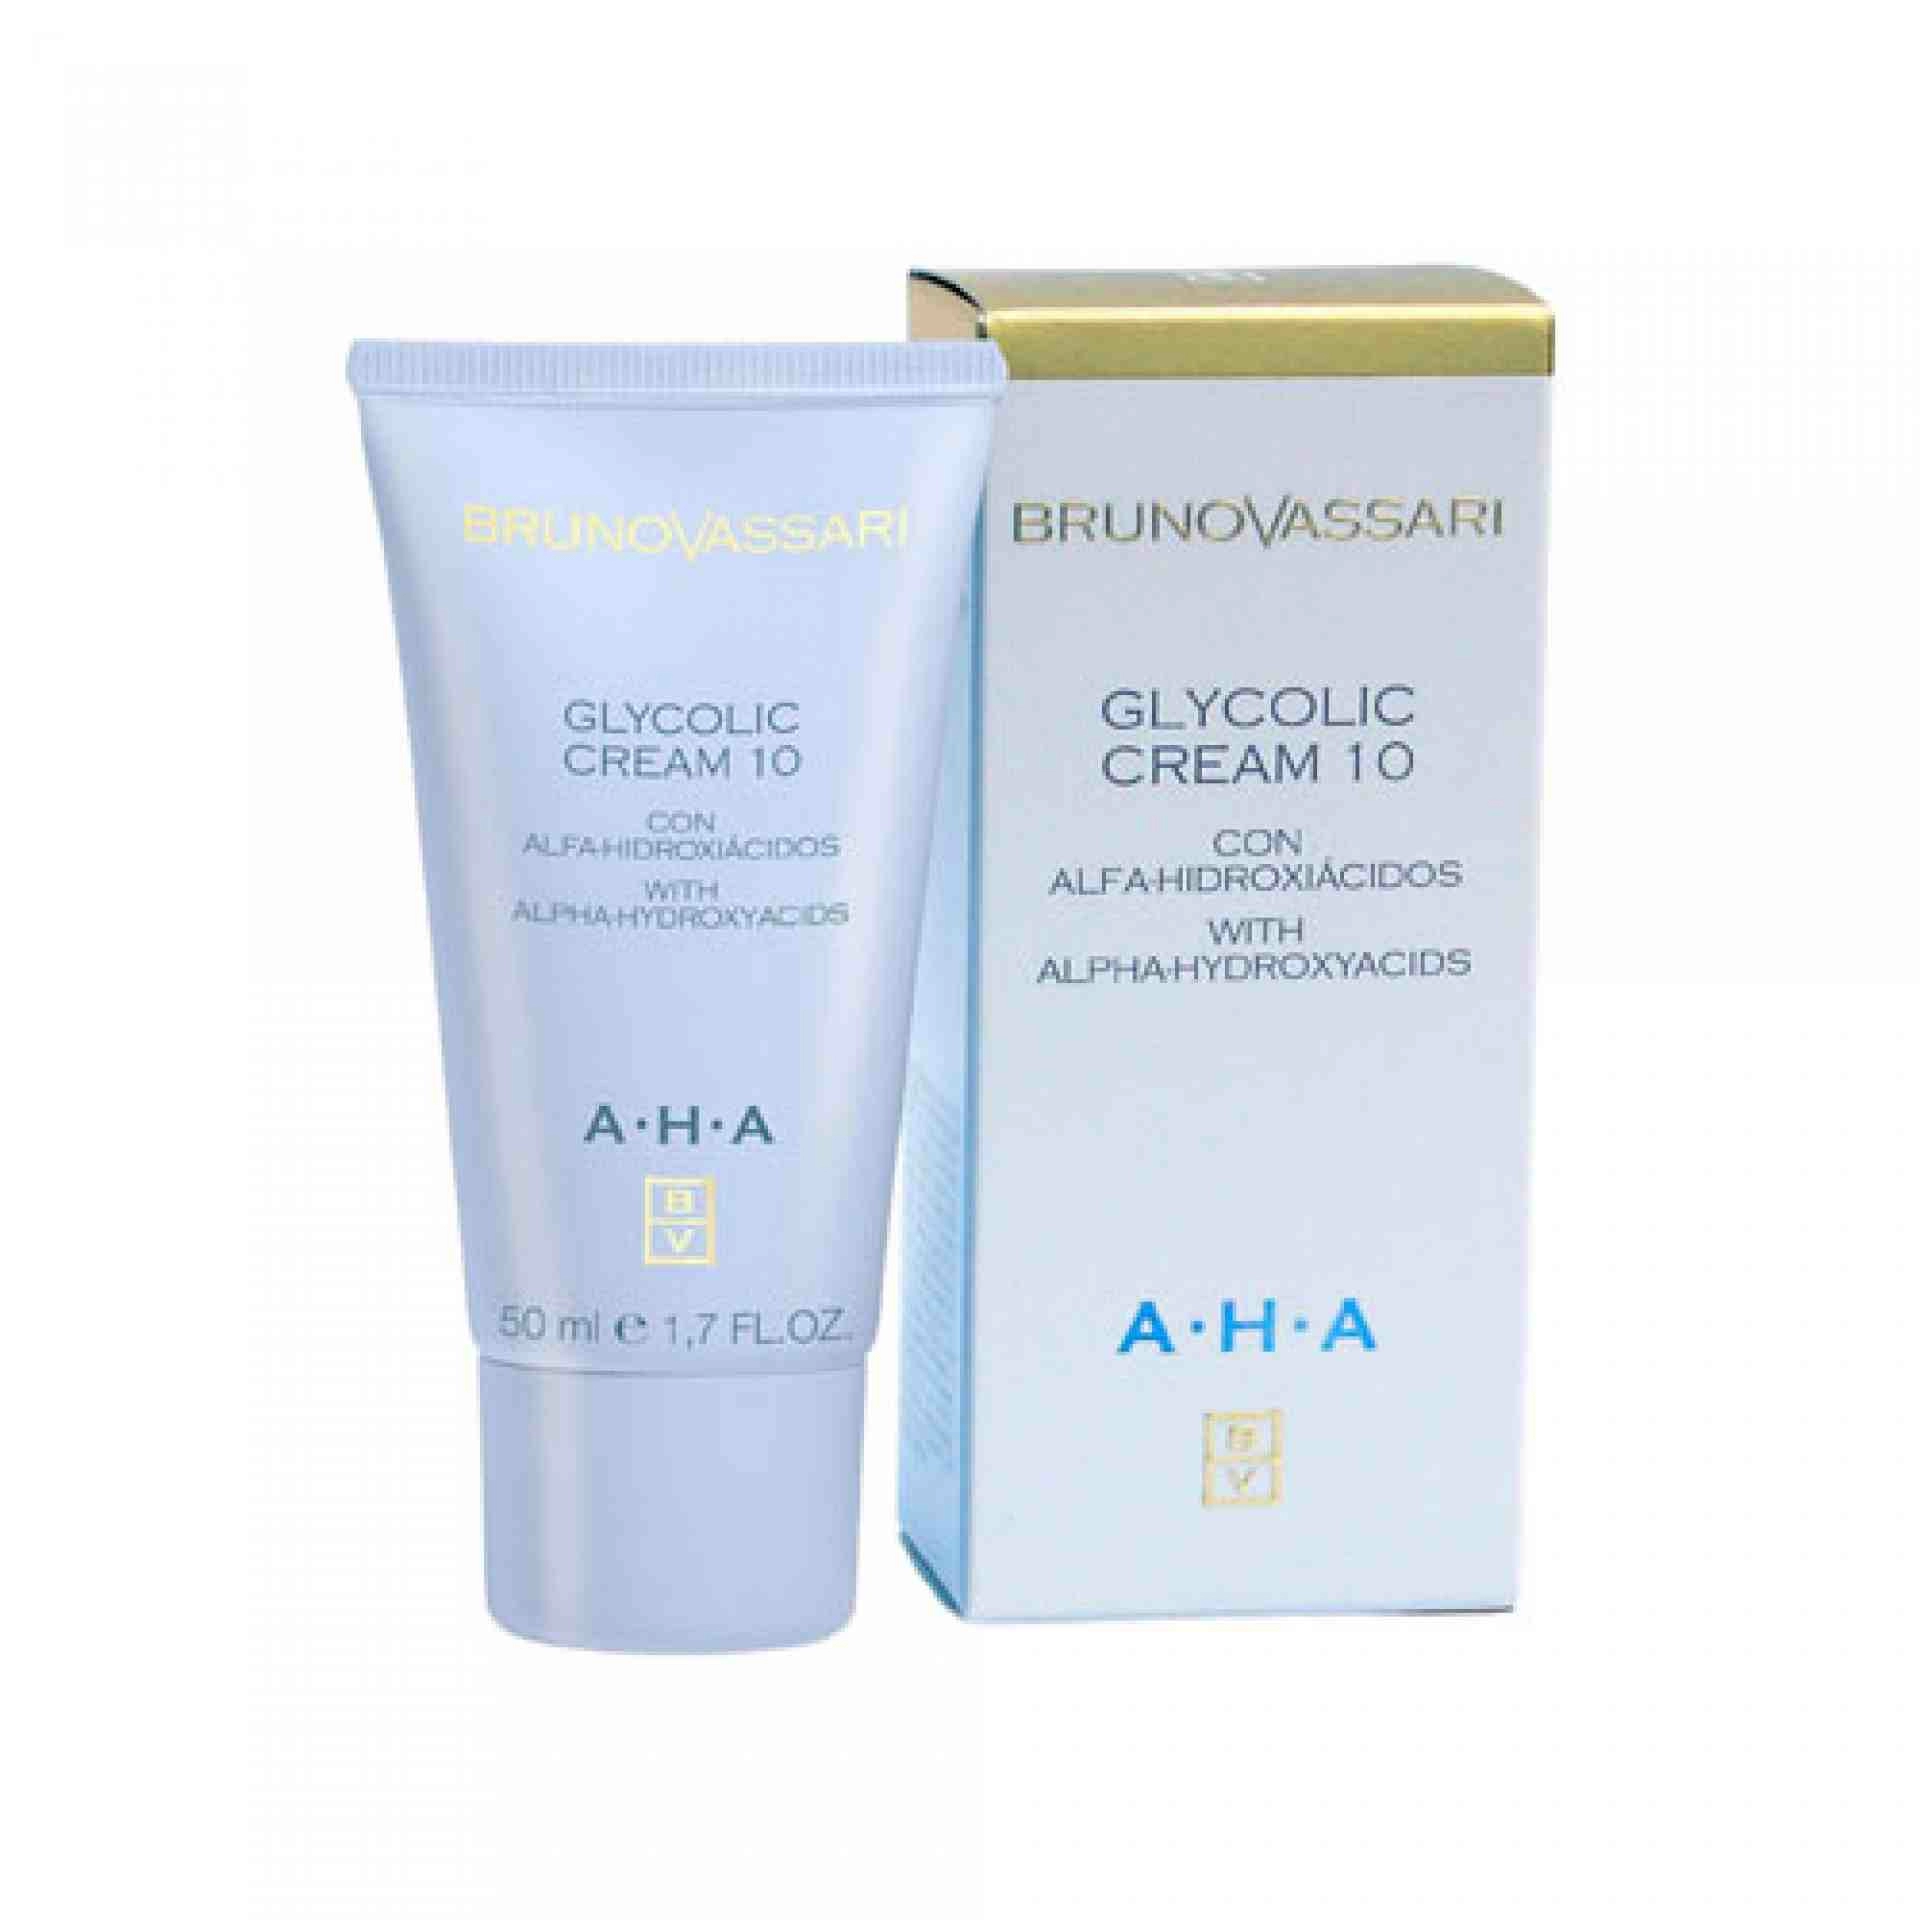 Glycolic Cream 10 | Crema antiarrugas 50ml - AHA - Bruno Vassari ®